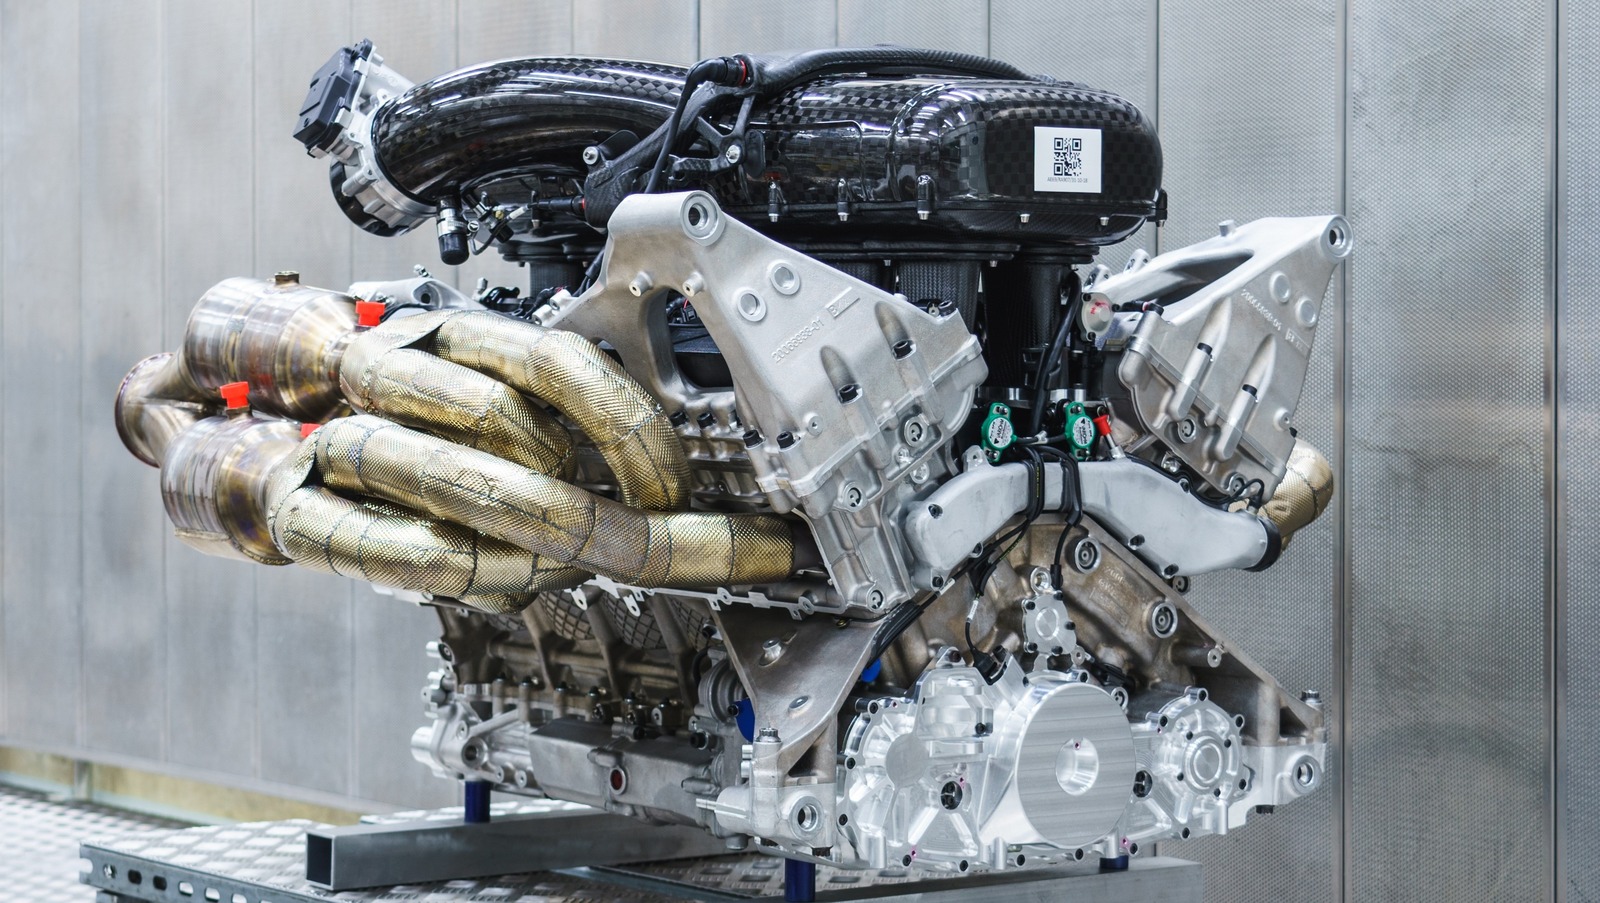 ۱۰ تا از چشمگیرترین موتورهای تنفس طبیعی که تا به حال ساخته شده اند